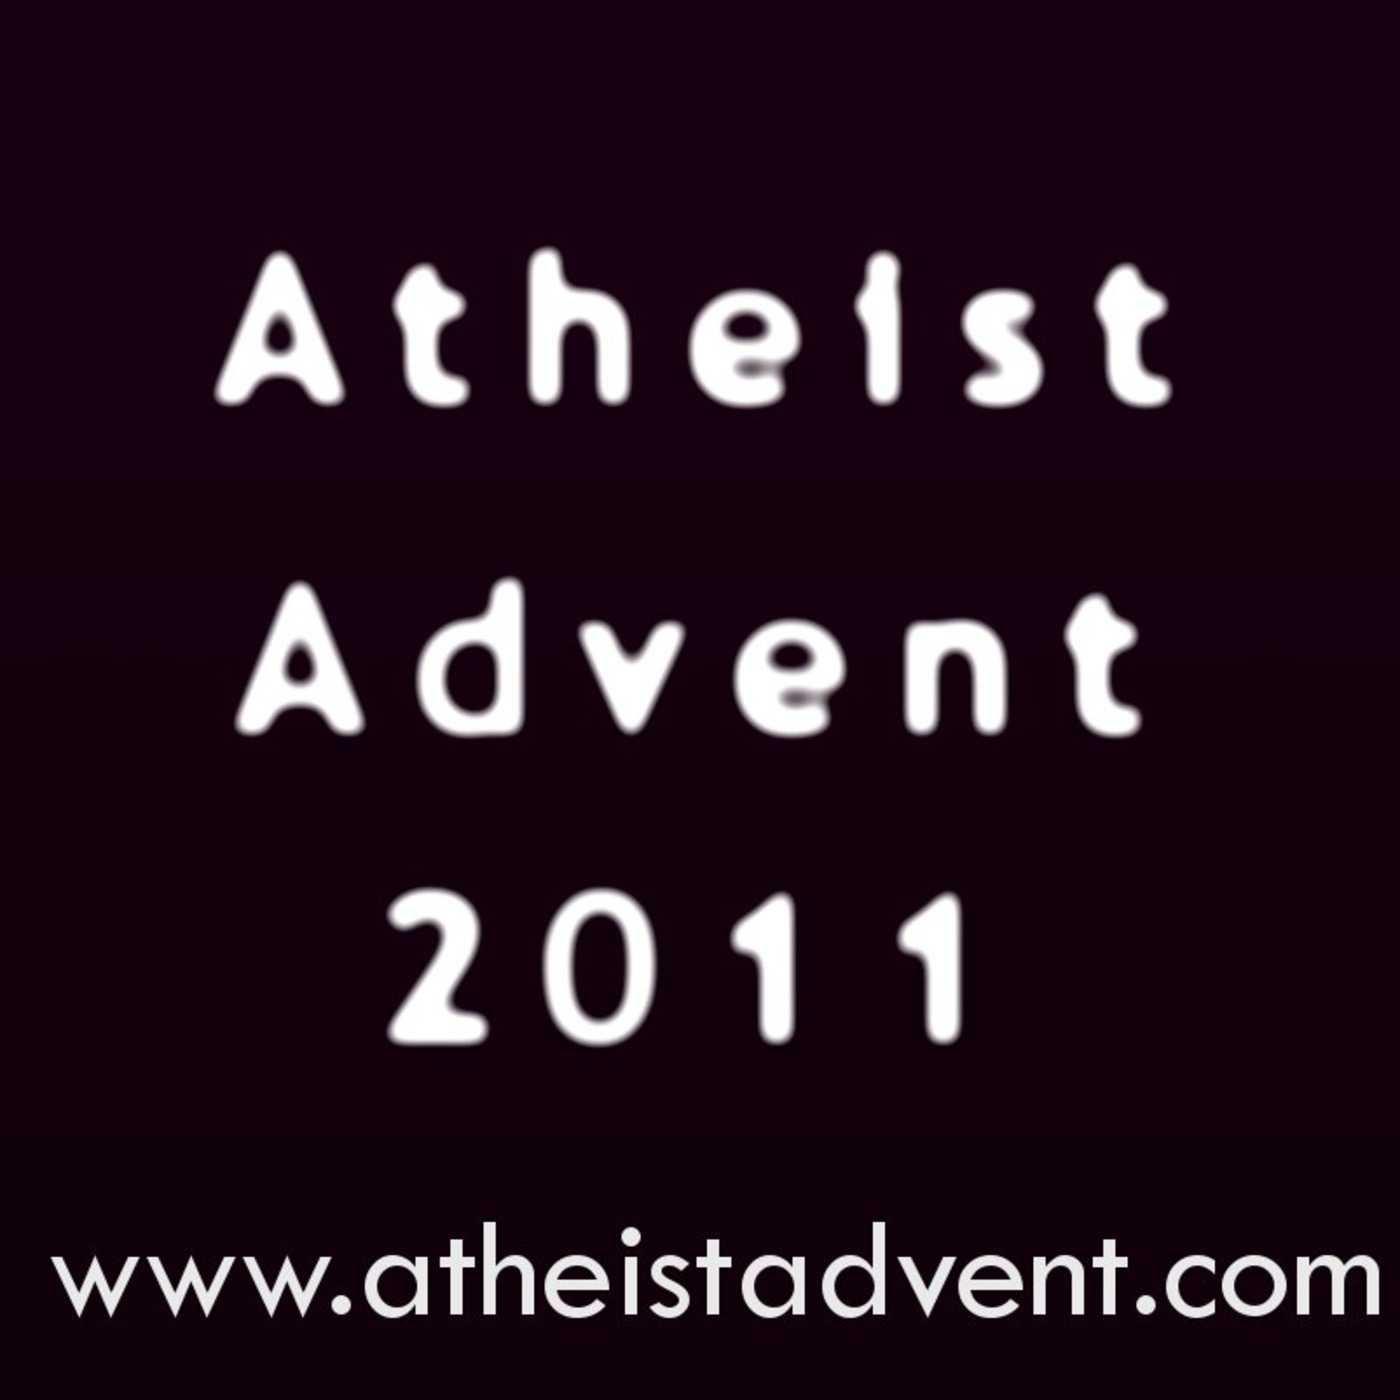 Atheist Advent 2011